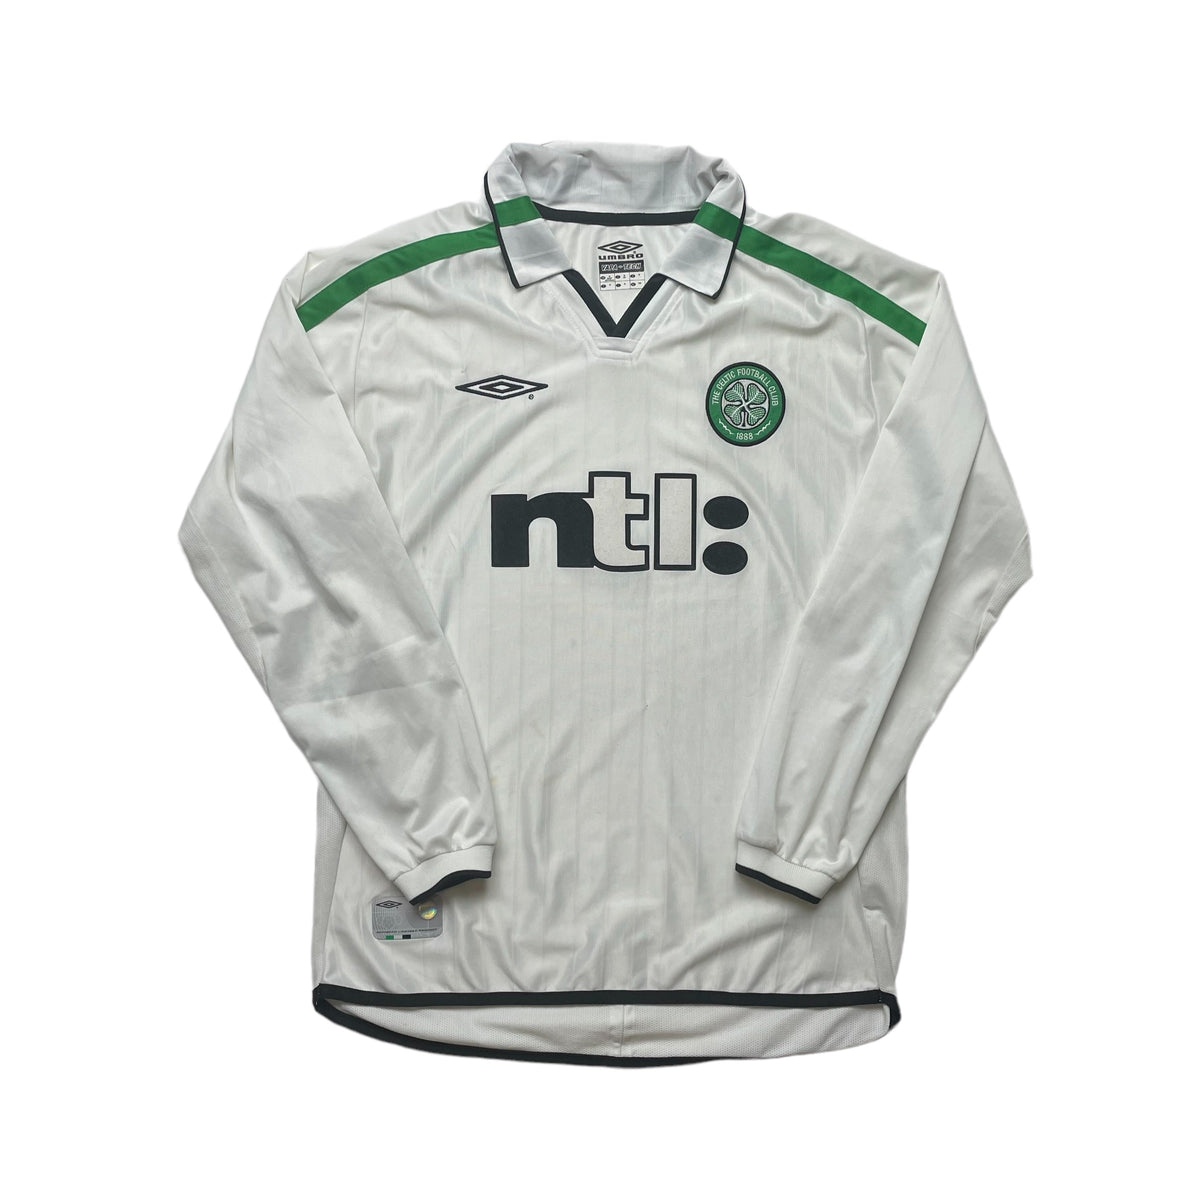 celtic away kit 2002